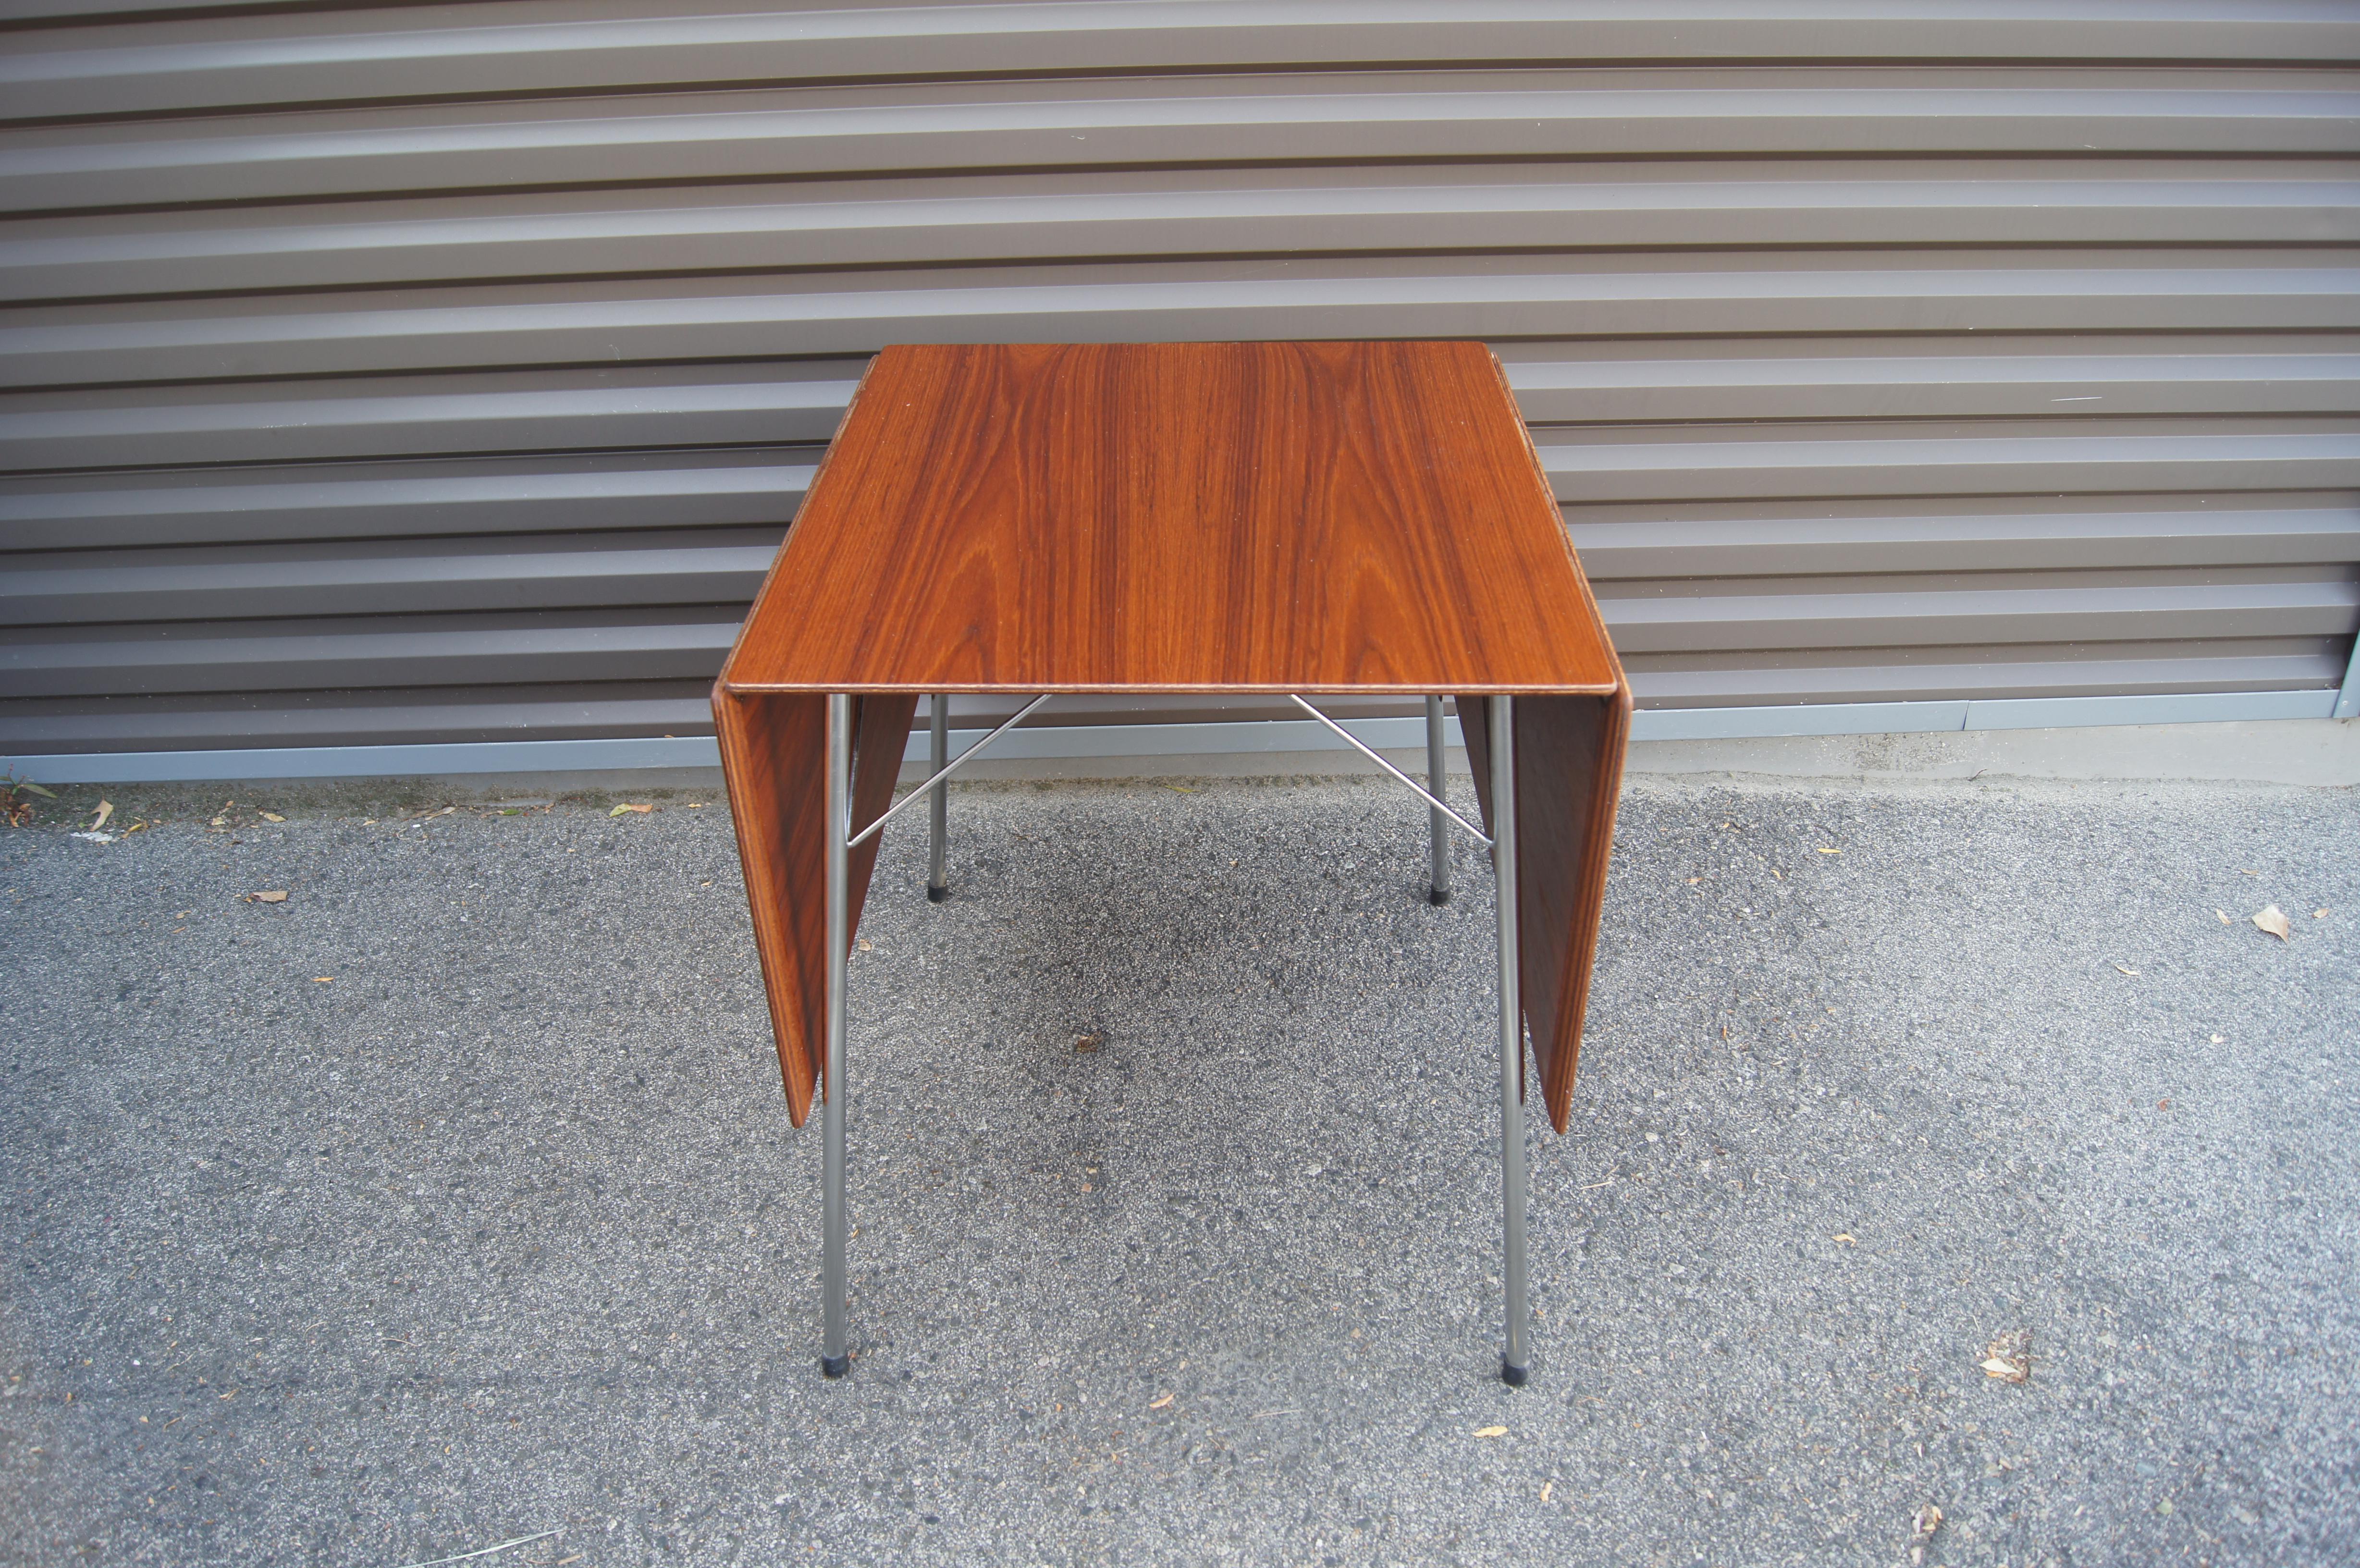 Dieser schlichte, skandinavisch-moderne Esstisch, Modell 3601, wurde 1952 von Arne Jacobsen für Fritz Hansen entworfen und verfügt über eine Platte aus Teakholz mit hängenden Blättern auf einem schlanken Gestell aus poliertem Stahl. Der Tisch, der